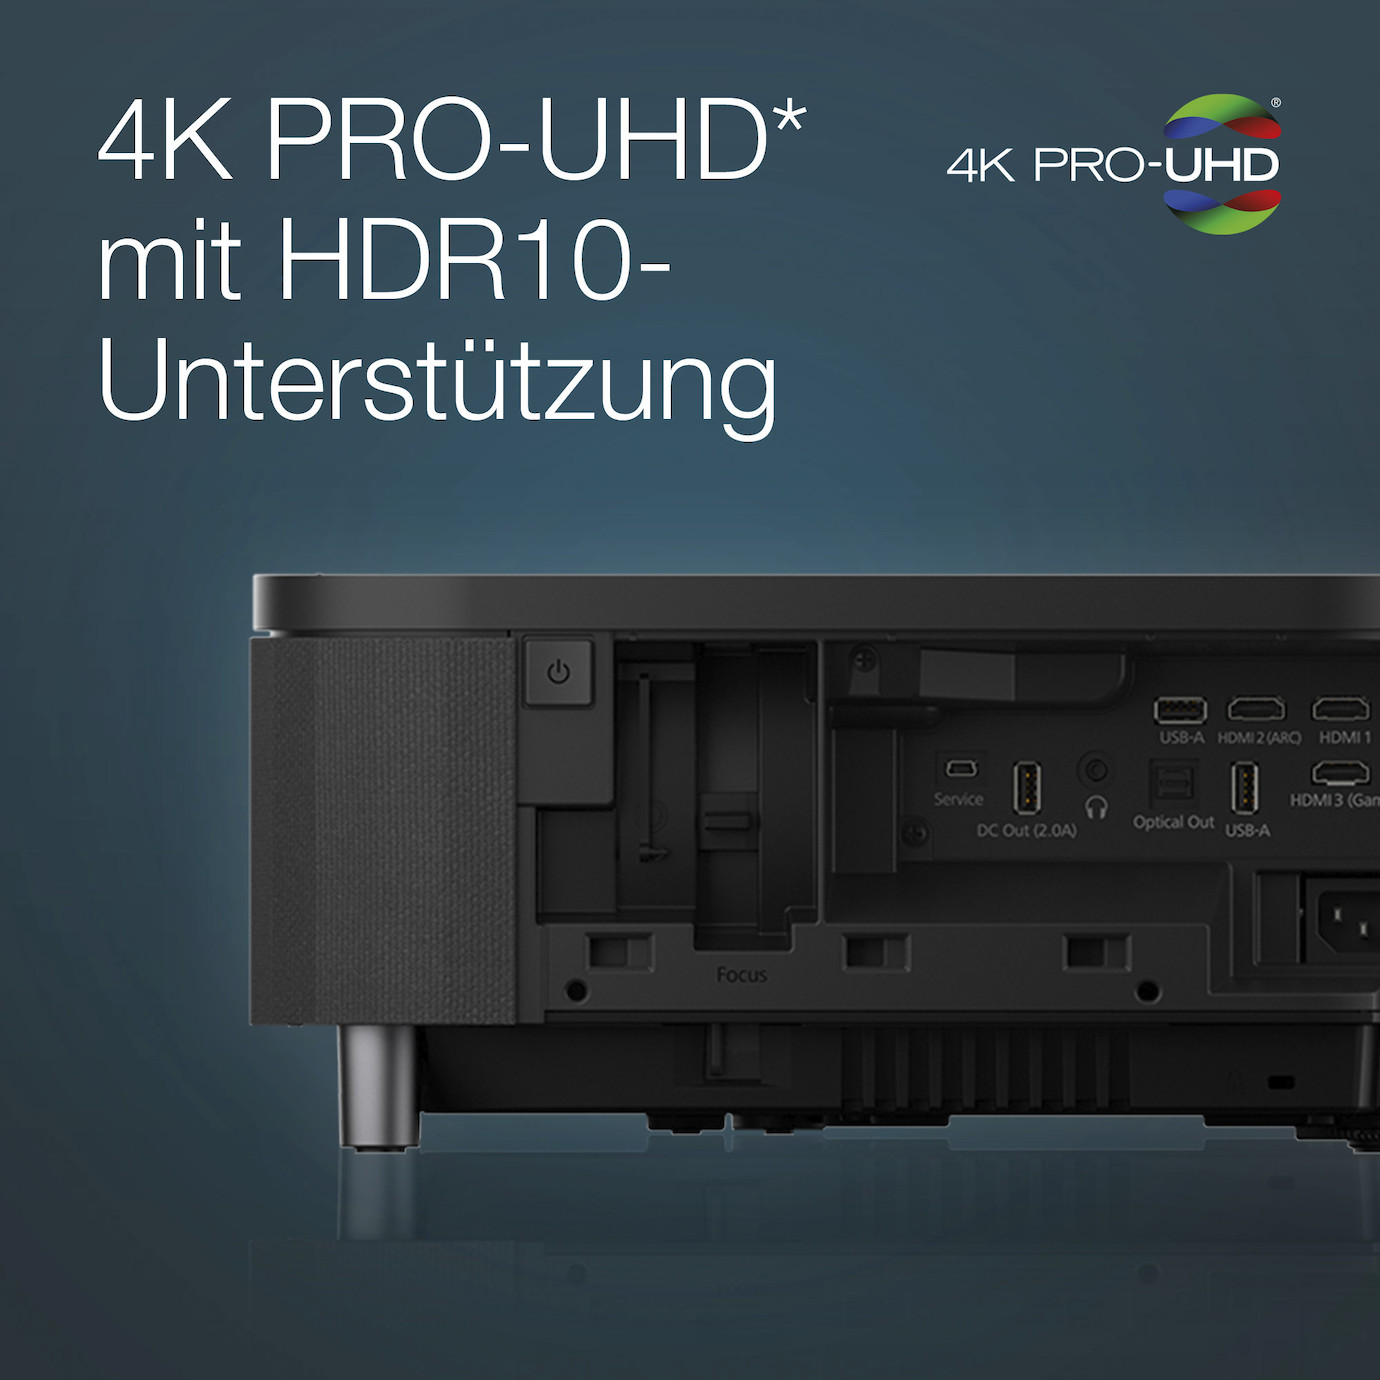 Vorschau: Epson EH-LS800B Heimkino Laser TV mit 4K HDR Auflösung und 4.000 ANSI-Lumen